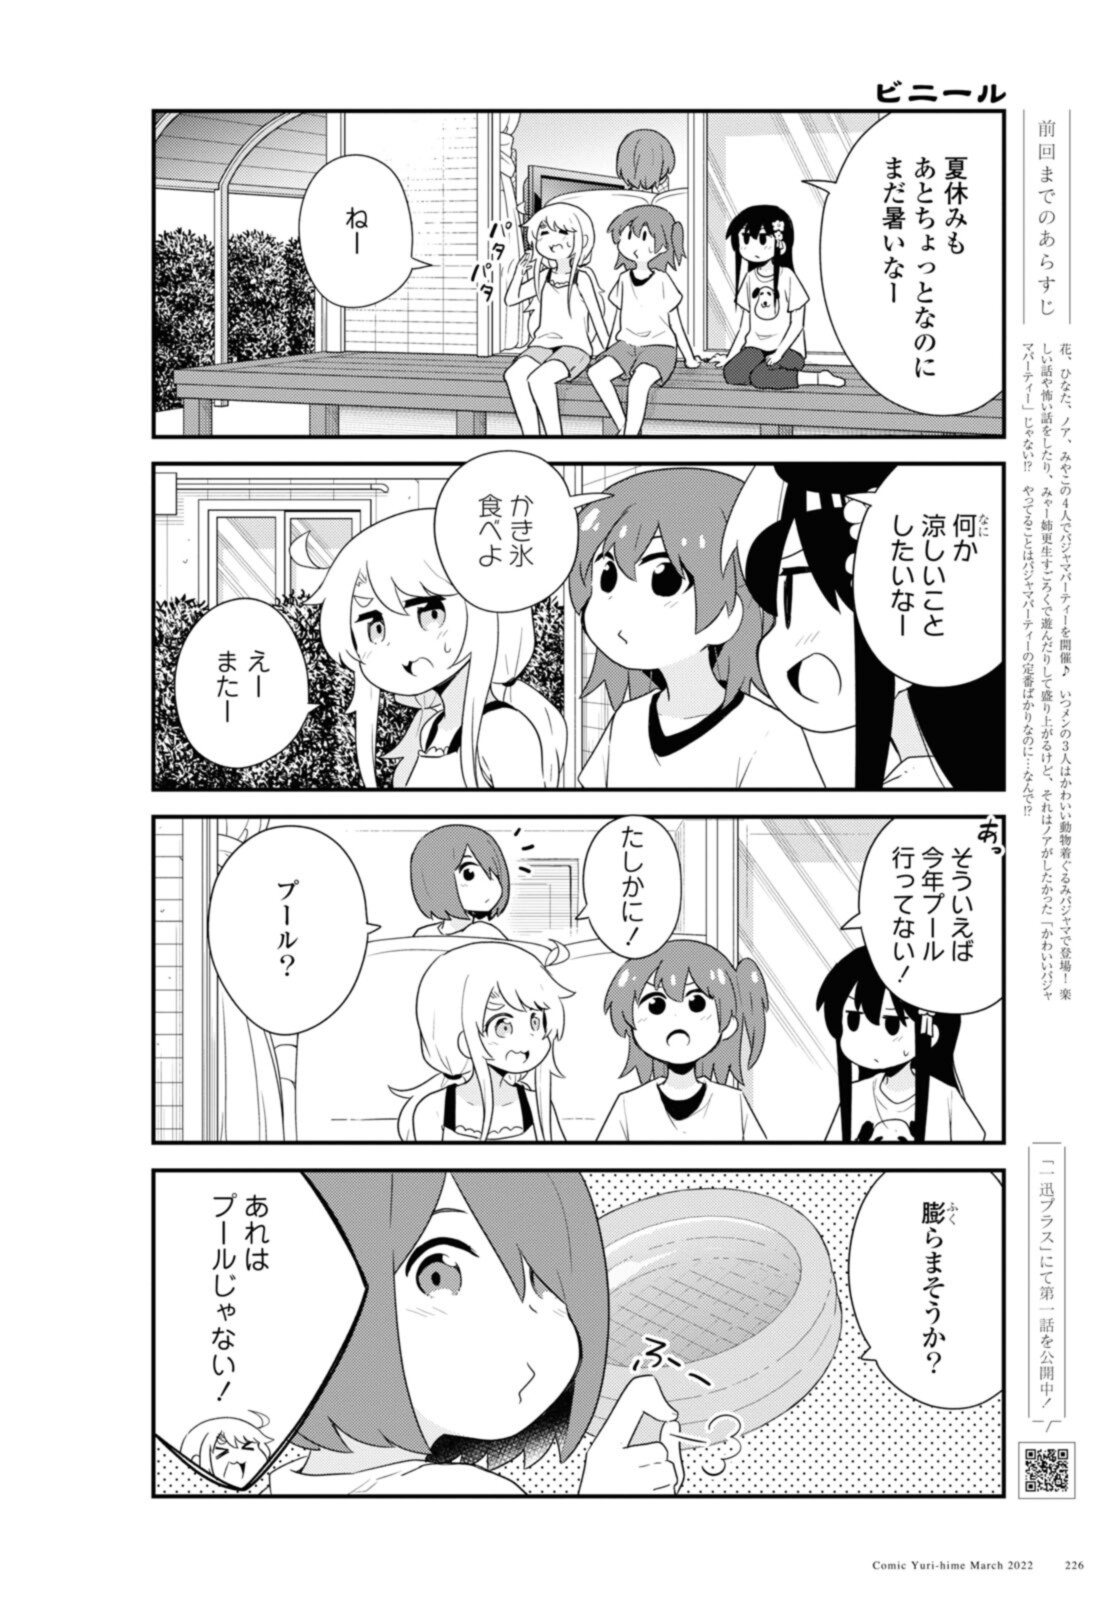 Watashi ni Tenshi ga Maiorita! - Chapter 93 - Page 2